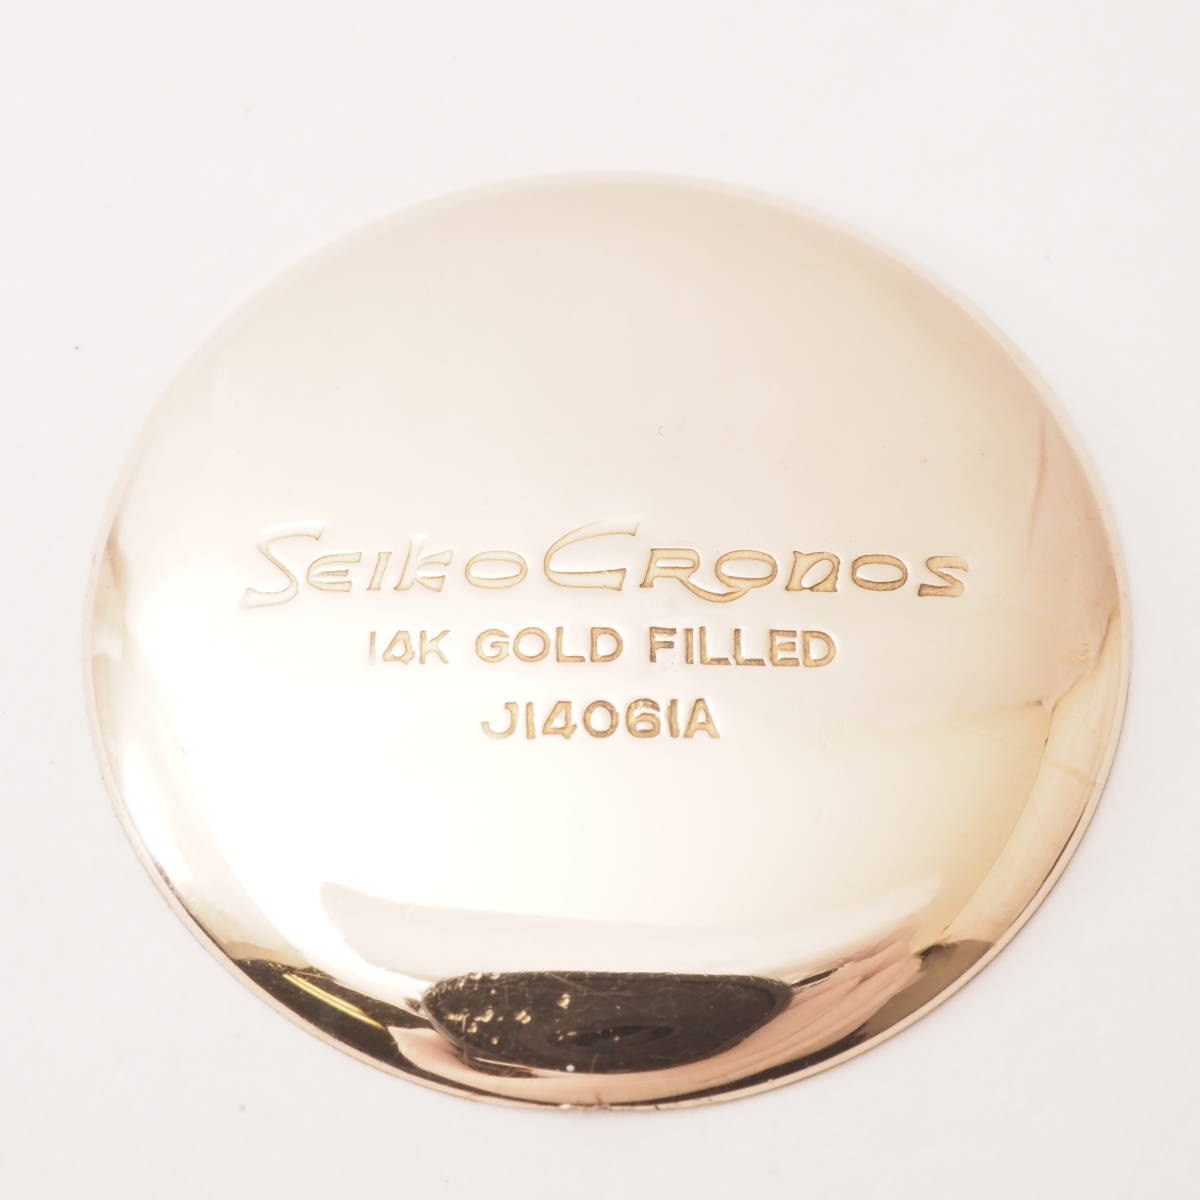 セイコー クロノス J14061A SEIKO Cronos 14K GOLD FILLED 23石 手巻き ゴールド ボーイズ 男女兼用 腕時計 フェイスのみ[0215710]BI4_画像5